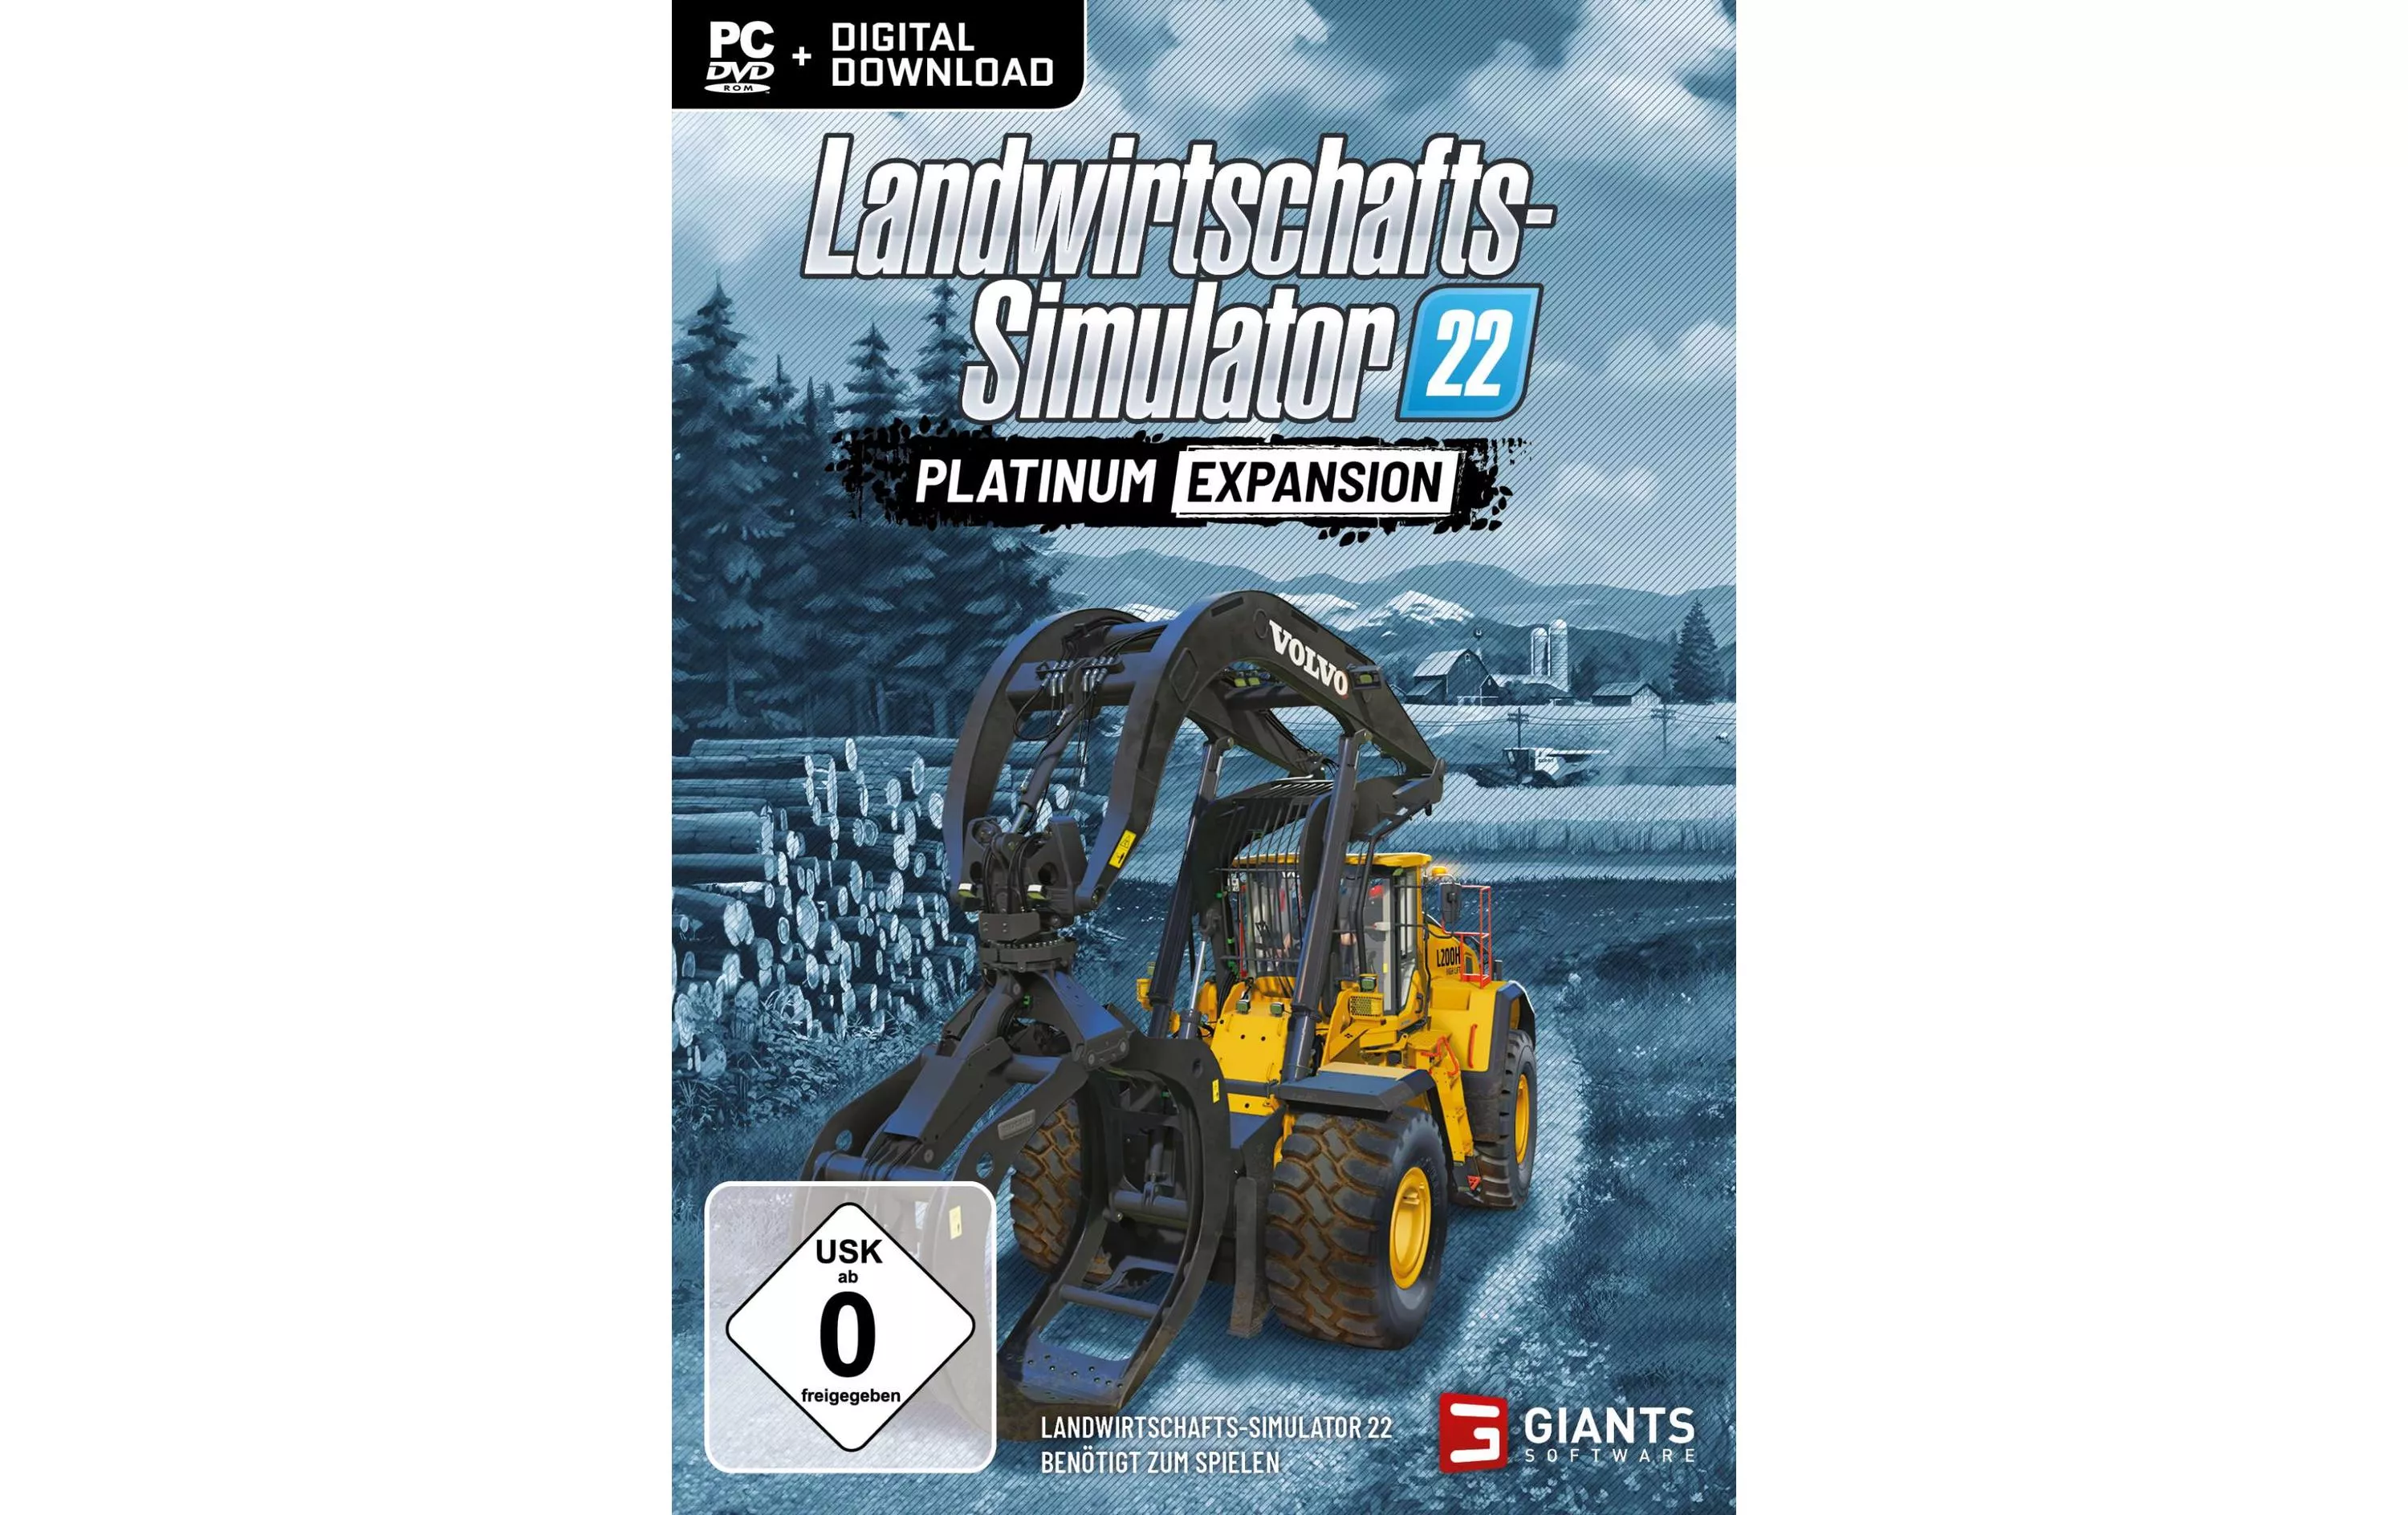 Landwirtschafts Simulator 22 Platinum Expansion